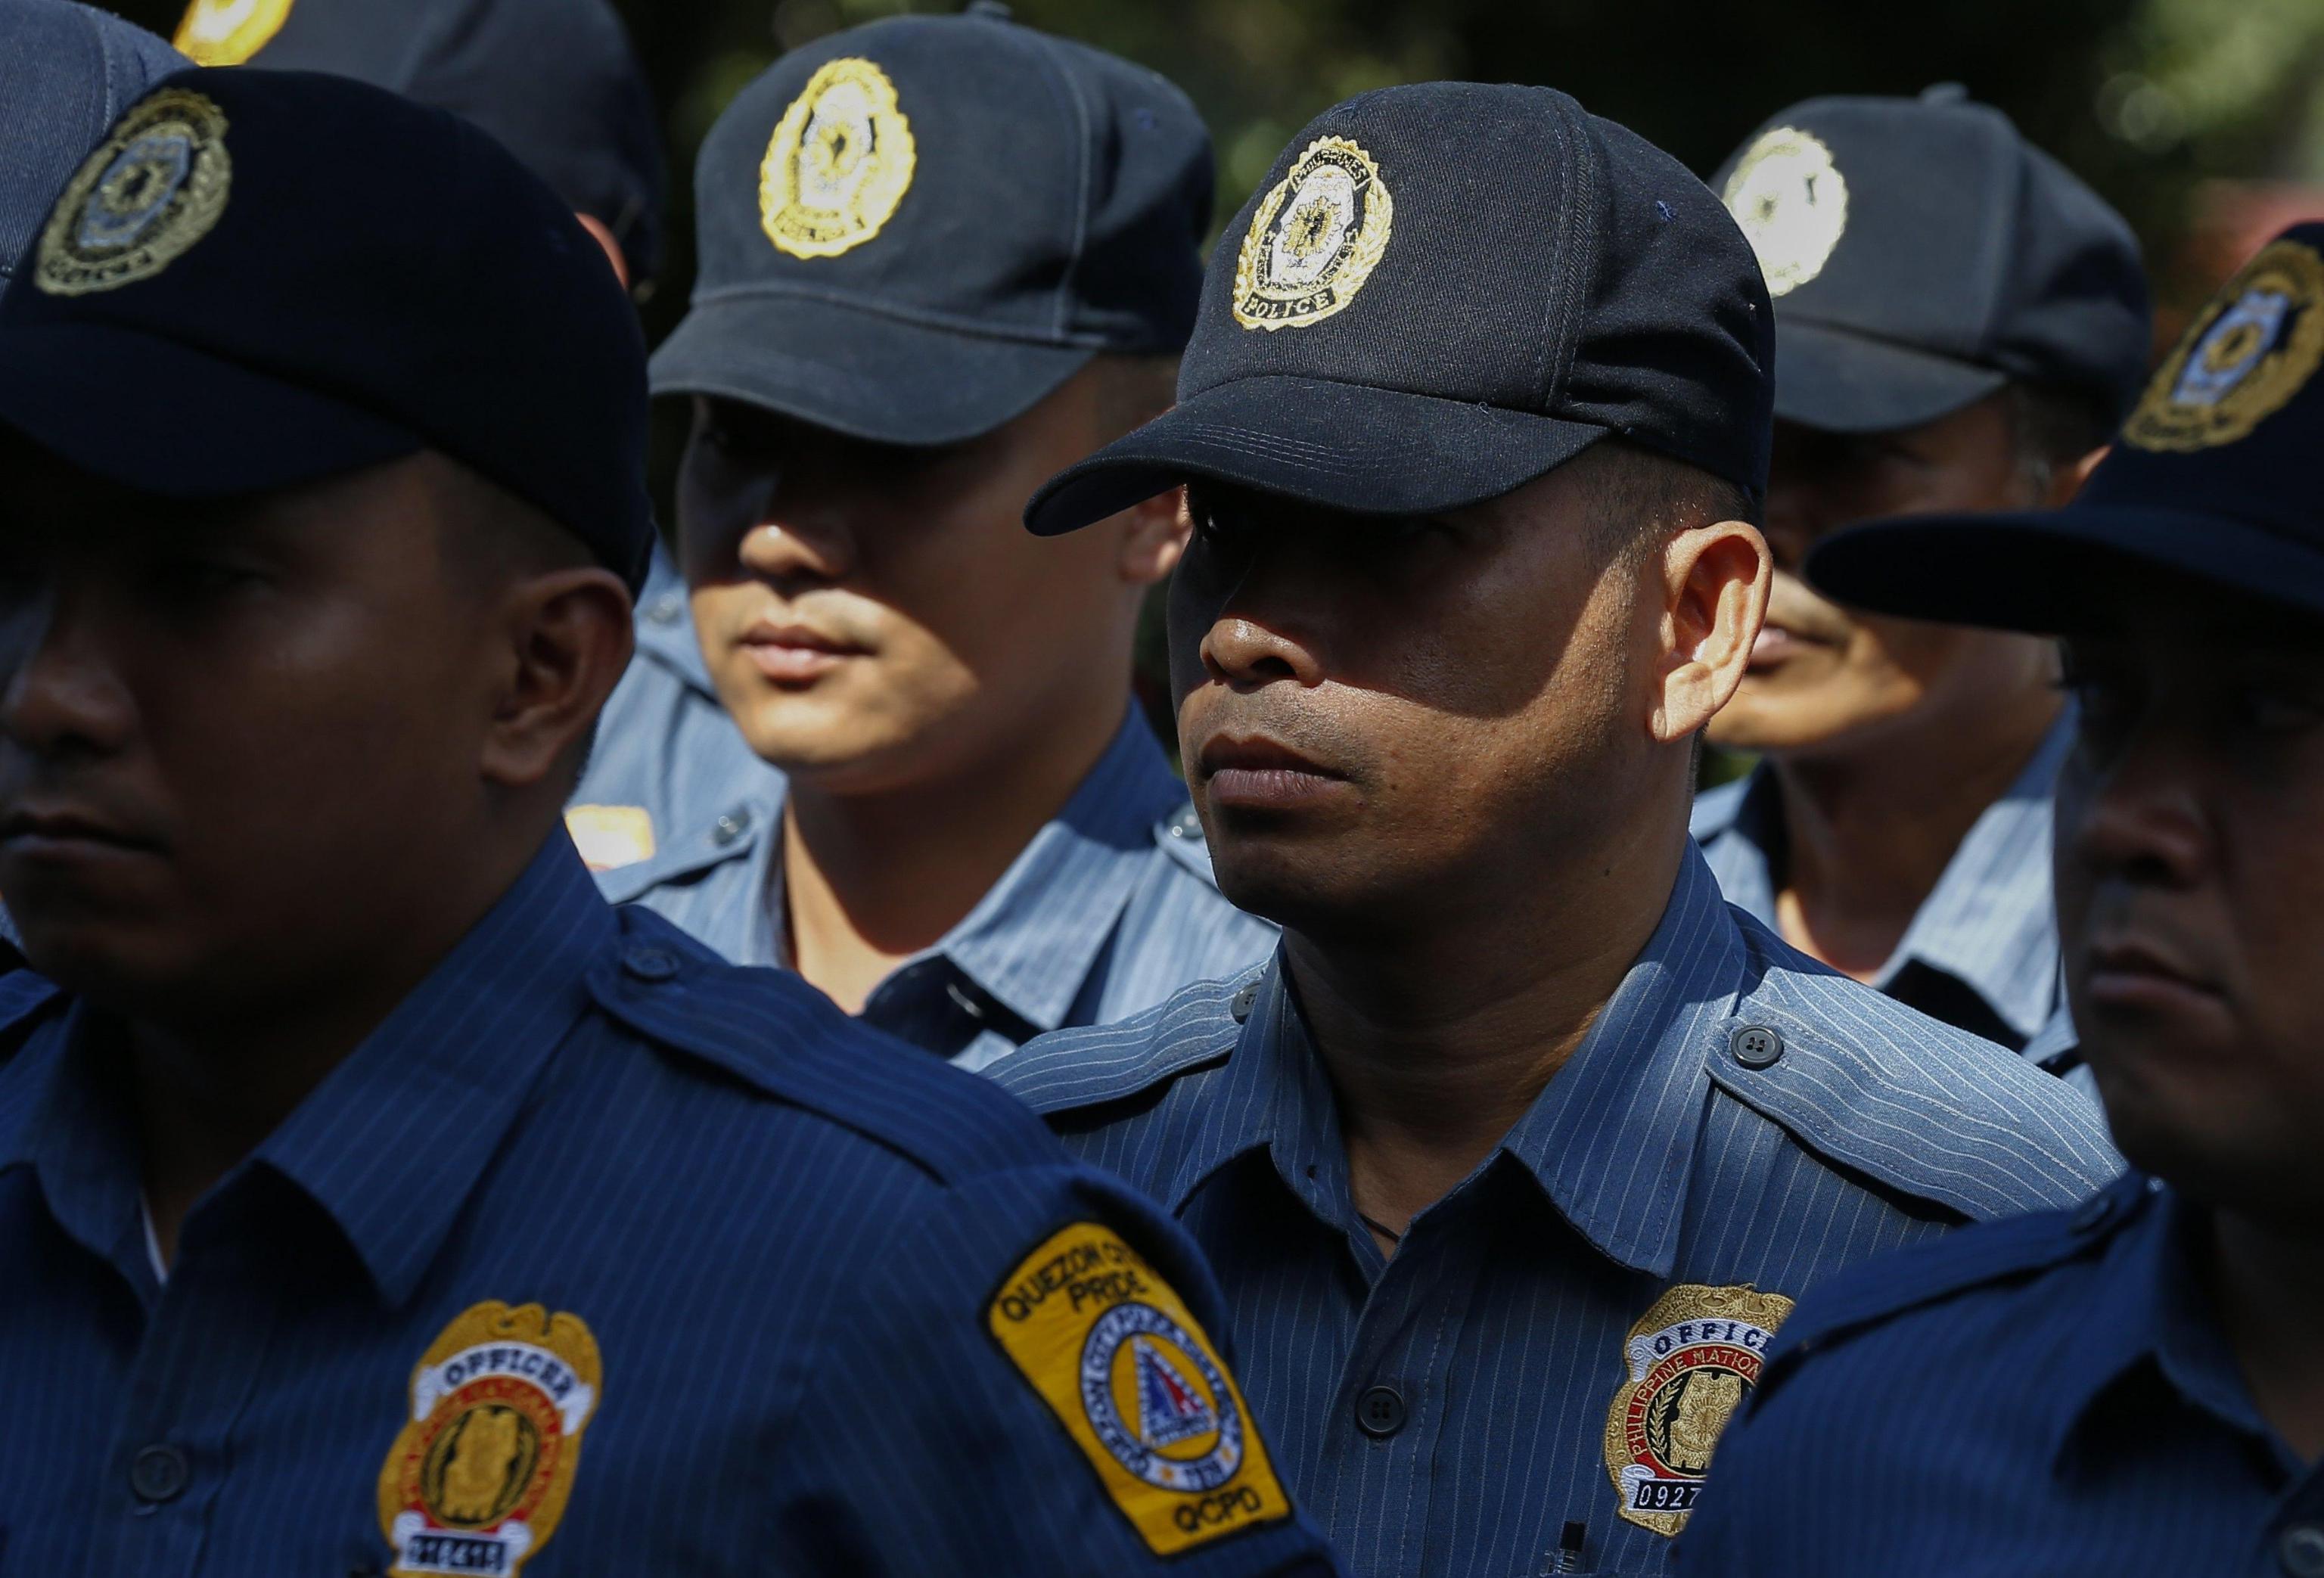 Poliziotti impegnati nella campagna anti droga voluta dal governo filippino